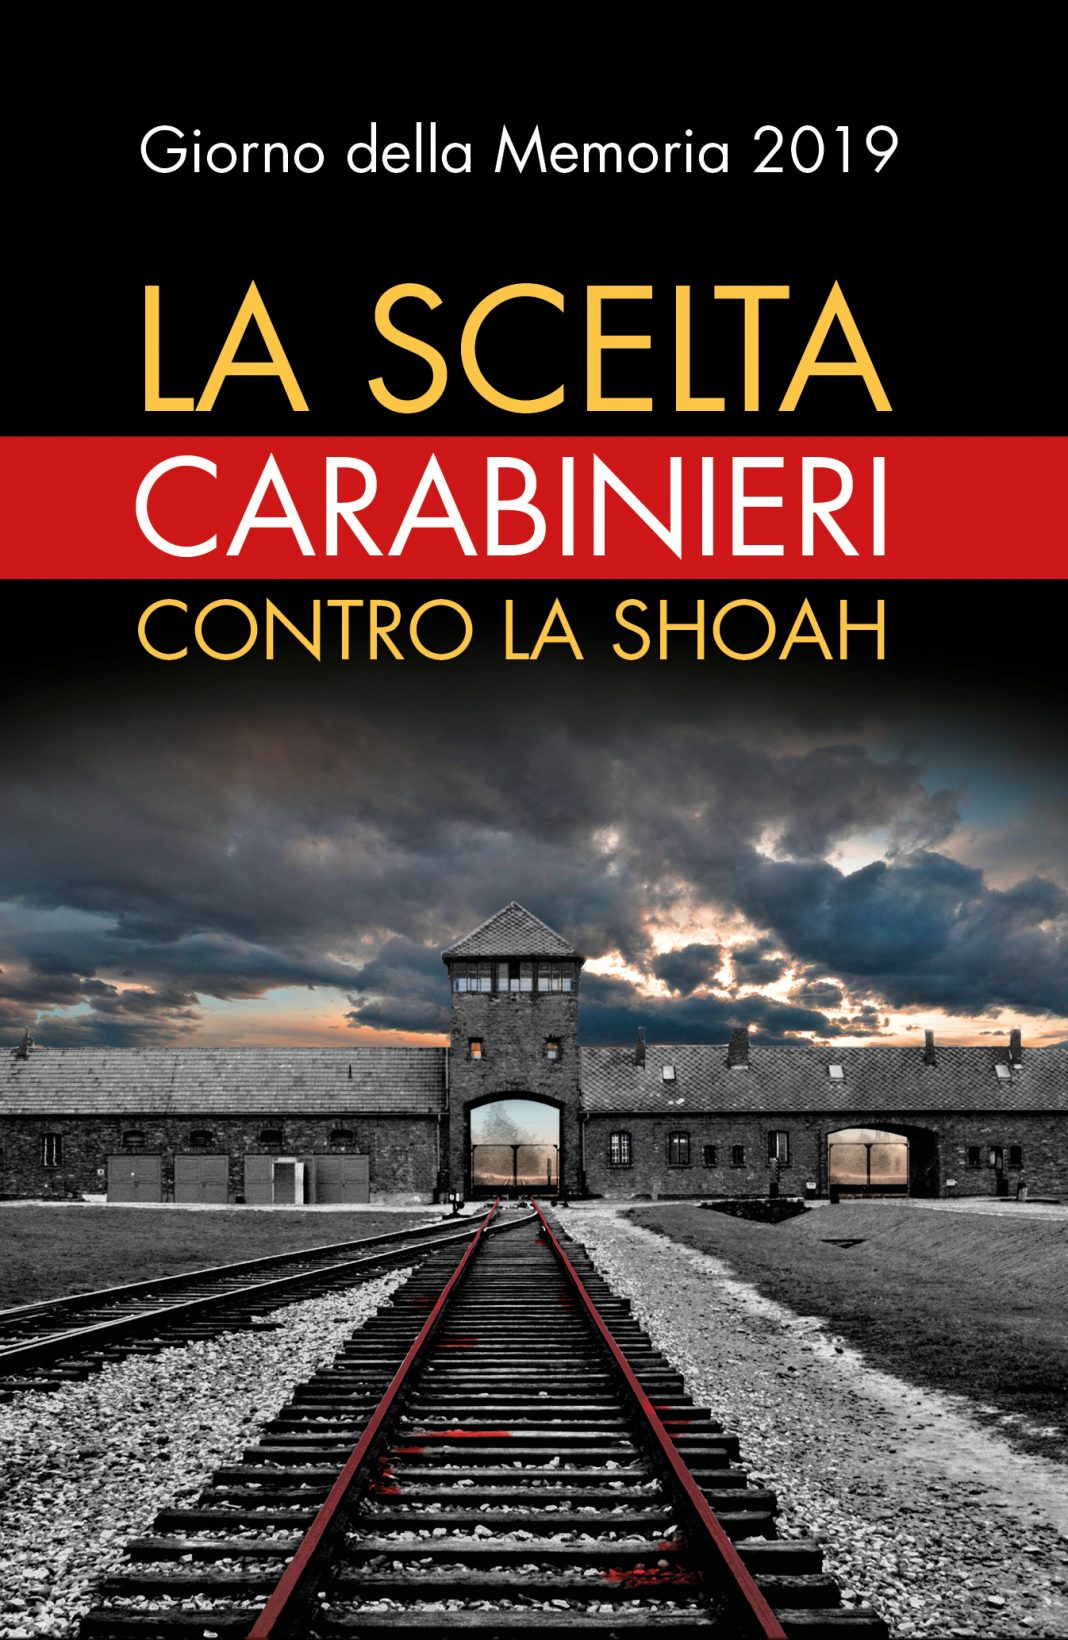 La scelta. Carabinieri contro la Shoahhttps://www.exibart.com/repository/media/eventi/2019/01/la-scelta.-carabinieri-contro-la-shoah-1068x1640.jpg